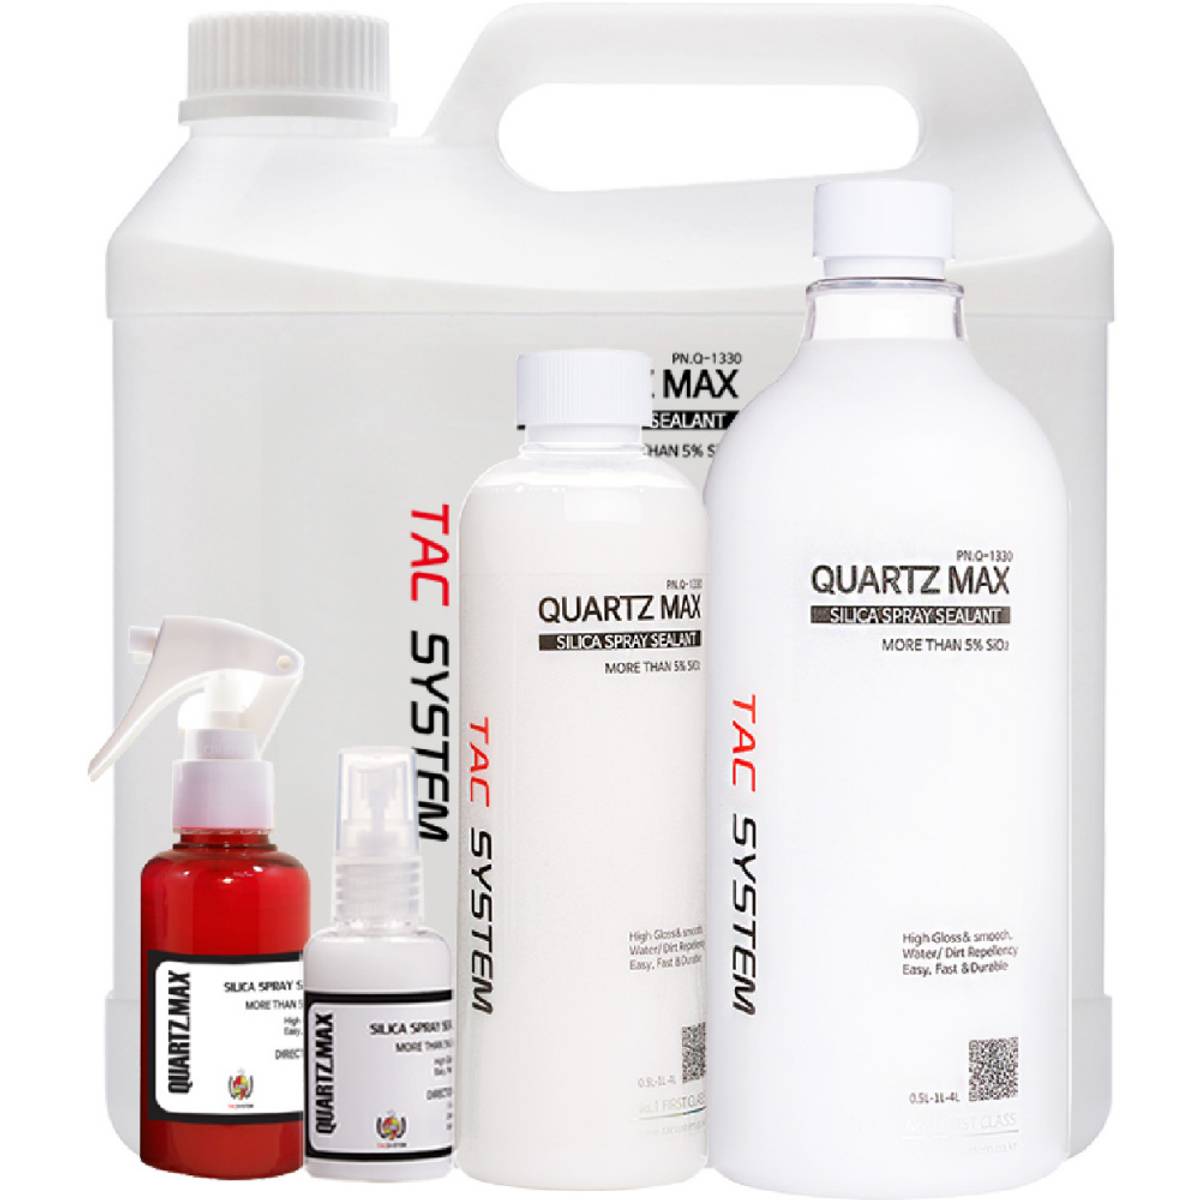 Tacsystem Quartz Max 500ml spray coating - Garasjekos.no